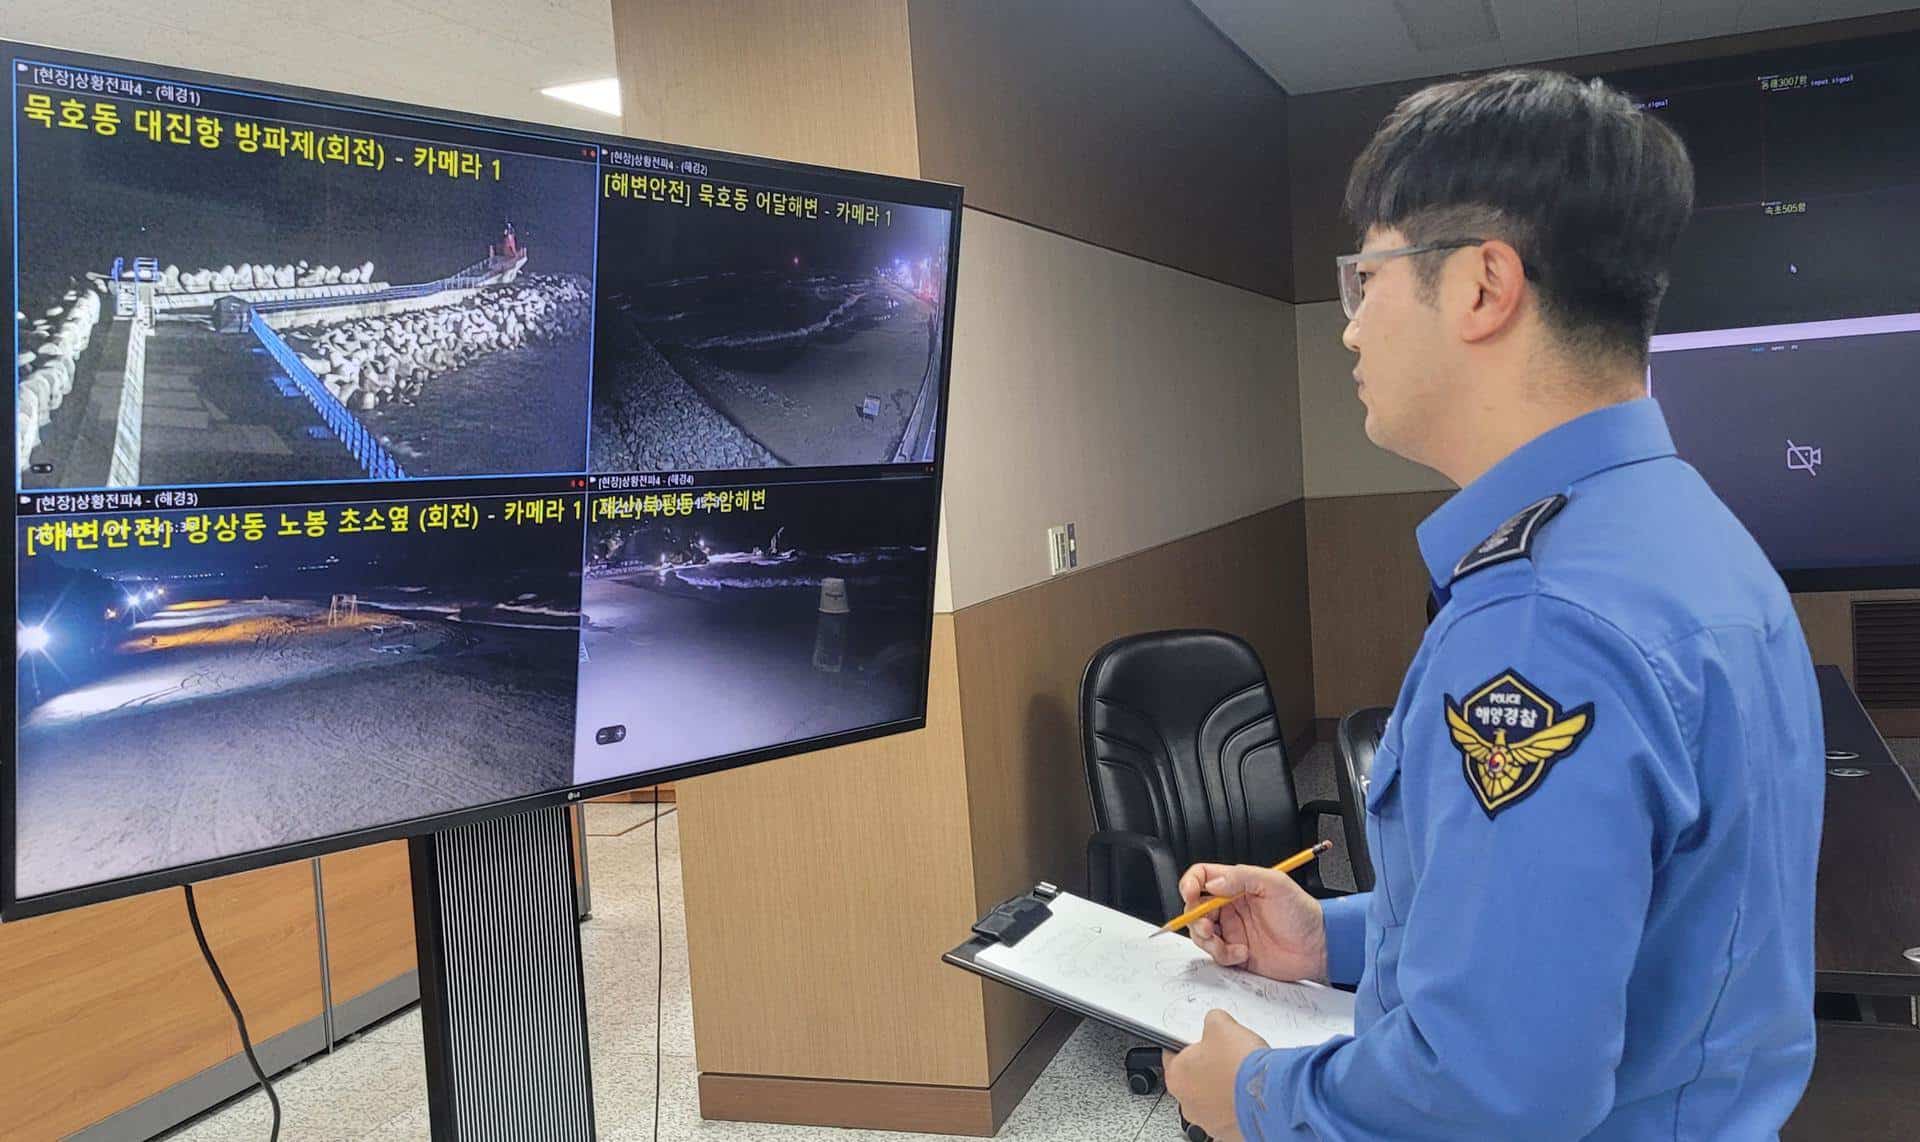 Un oficial de la Guardia Costera de Corea del Sur monitorea transmisiones de televisión por circuito cerrado que muestran playas y áreas costeras, dentro de la sede regional en Donghae, después de tsunamis menores causados  por un gran terremoto frente a la costa de Japón.